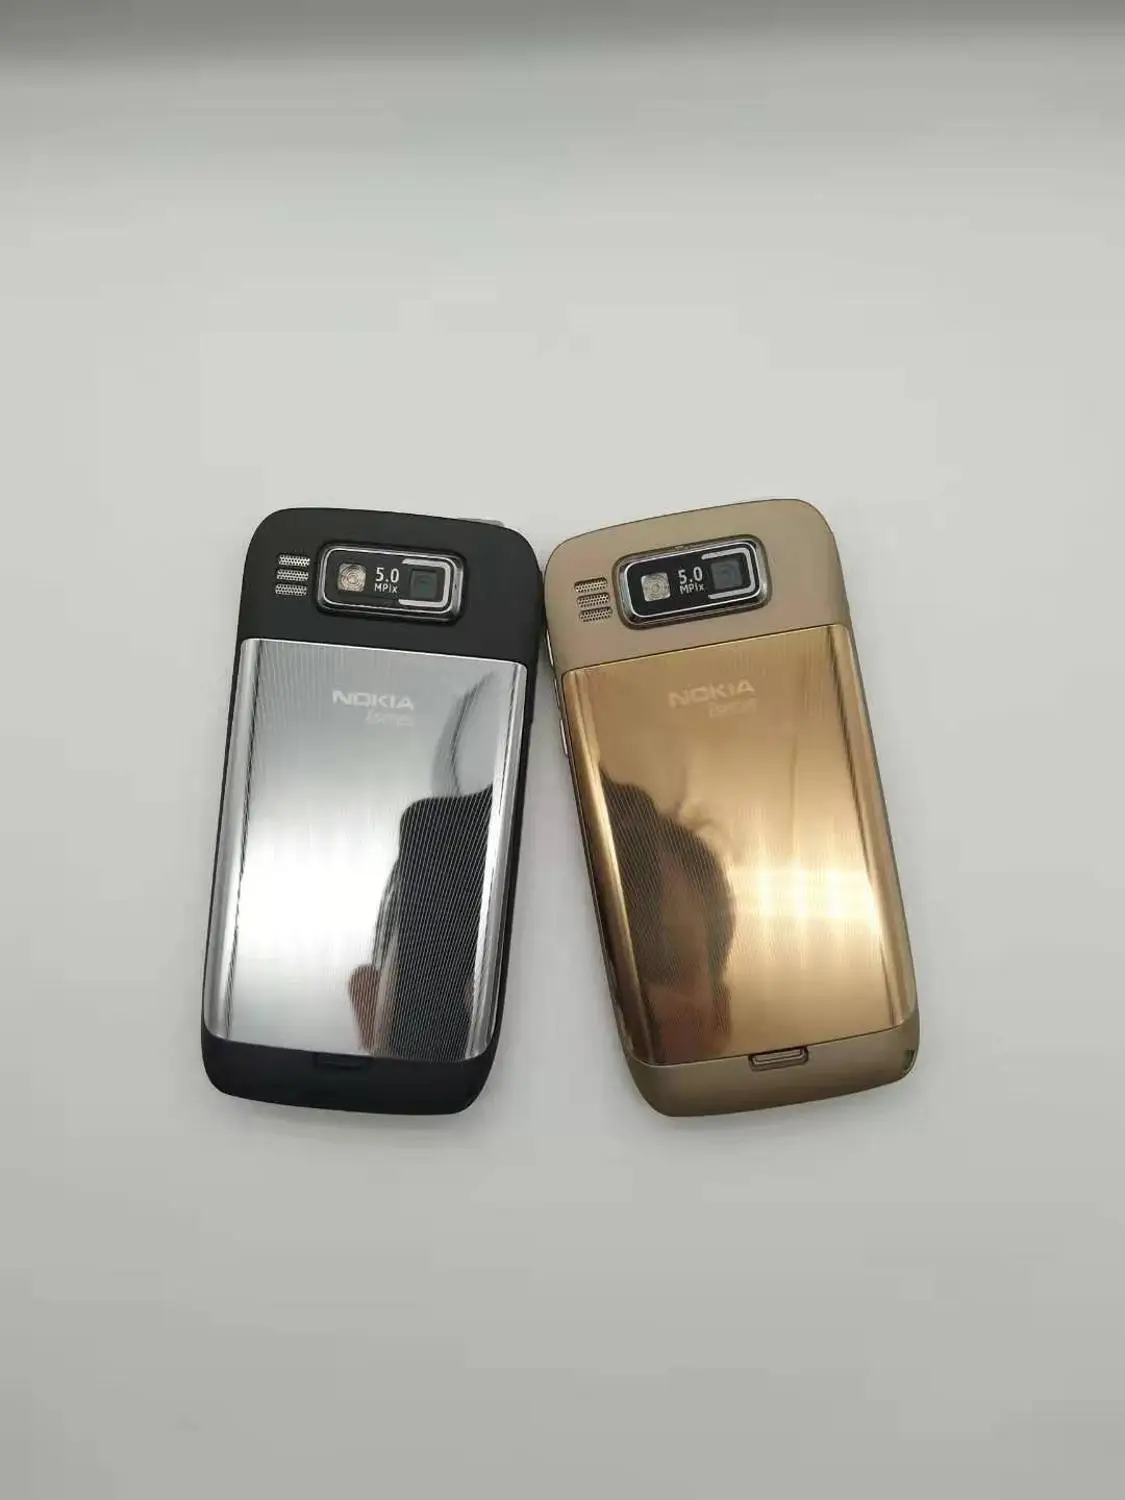 E72 Nokia E72 мобильный телефон 3g Wifi gps 5MP черный разблокированный E серия смартфон и один год гарантии отремонтированный